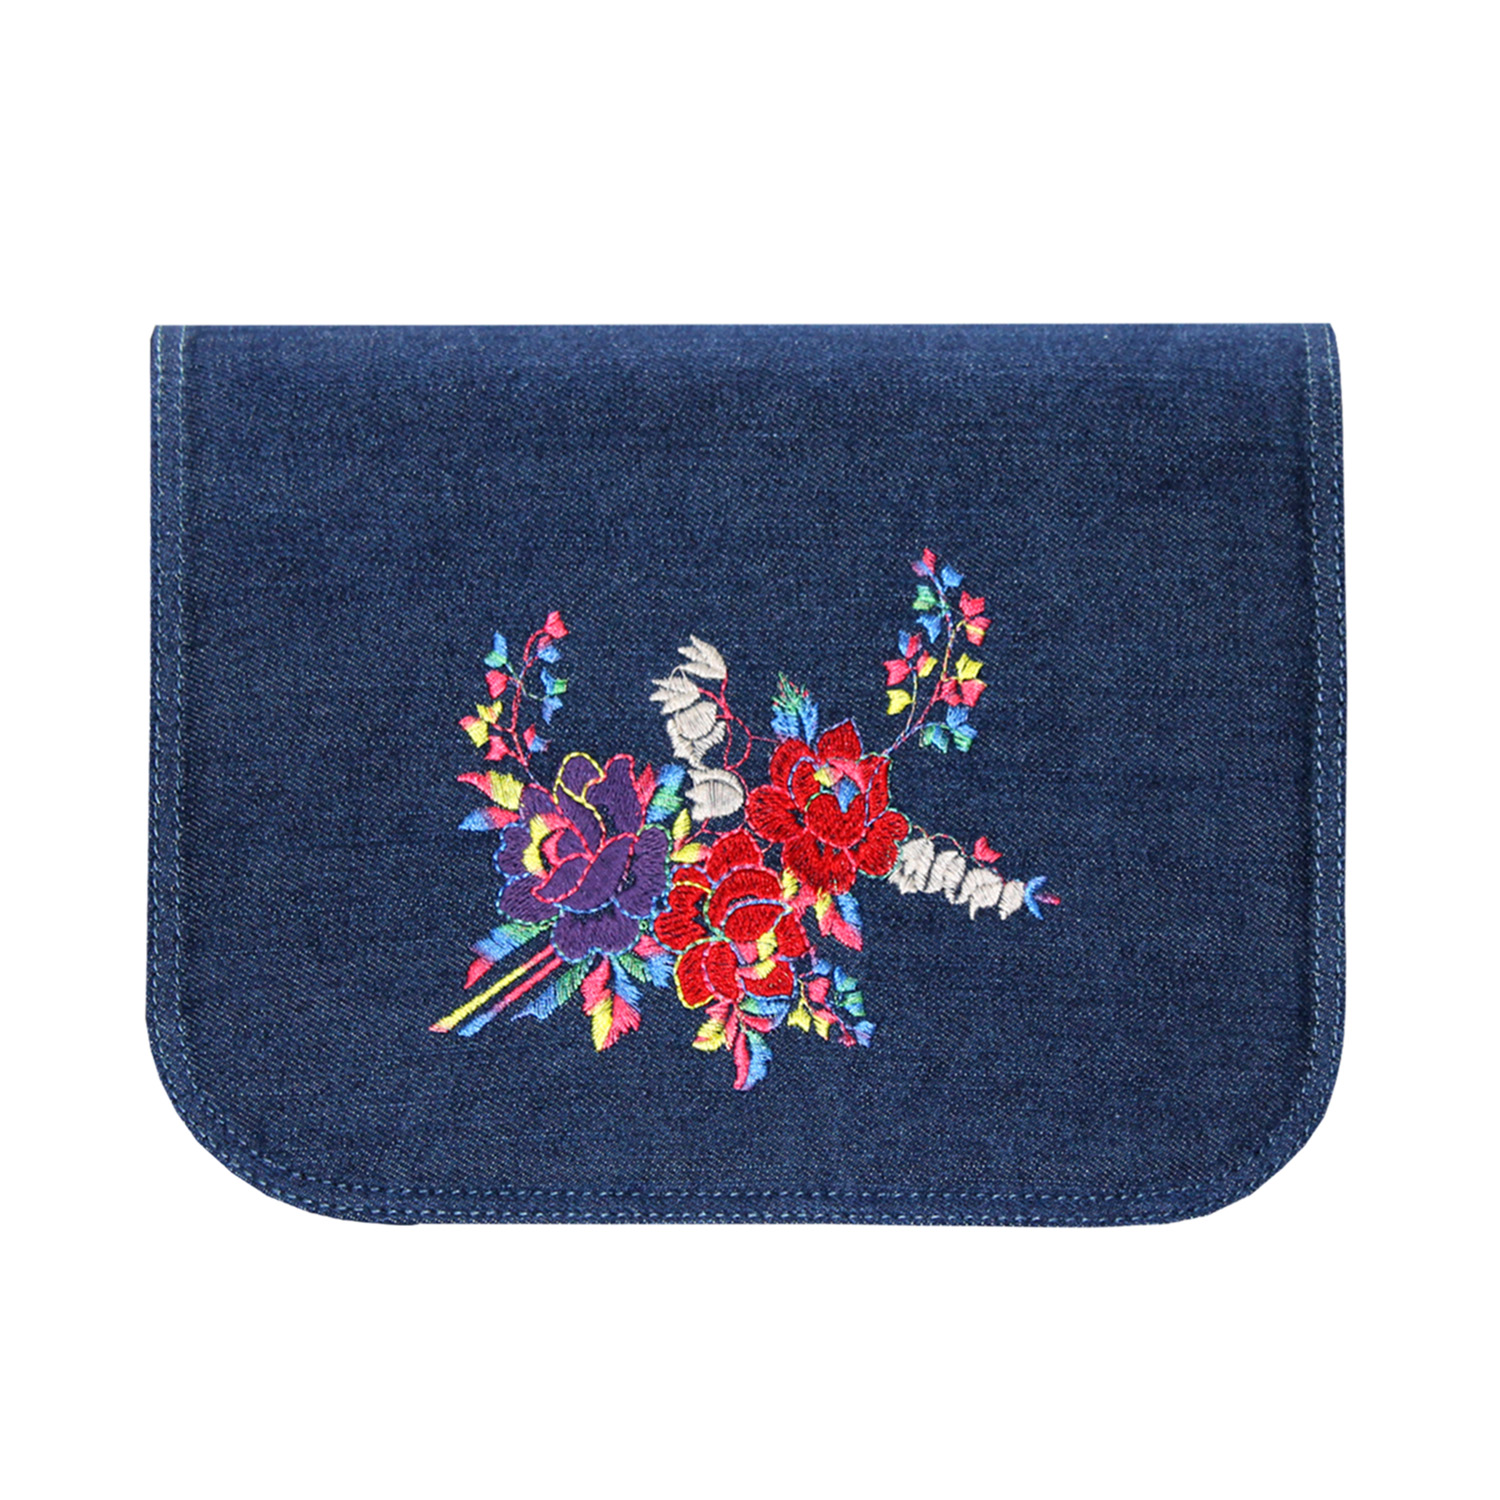 blaues Jeans Design mit Stickereien in Bunt für Handtaschen der soft Bag Serie von Delieta